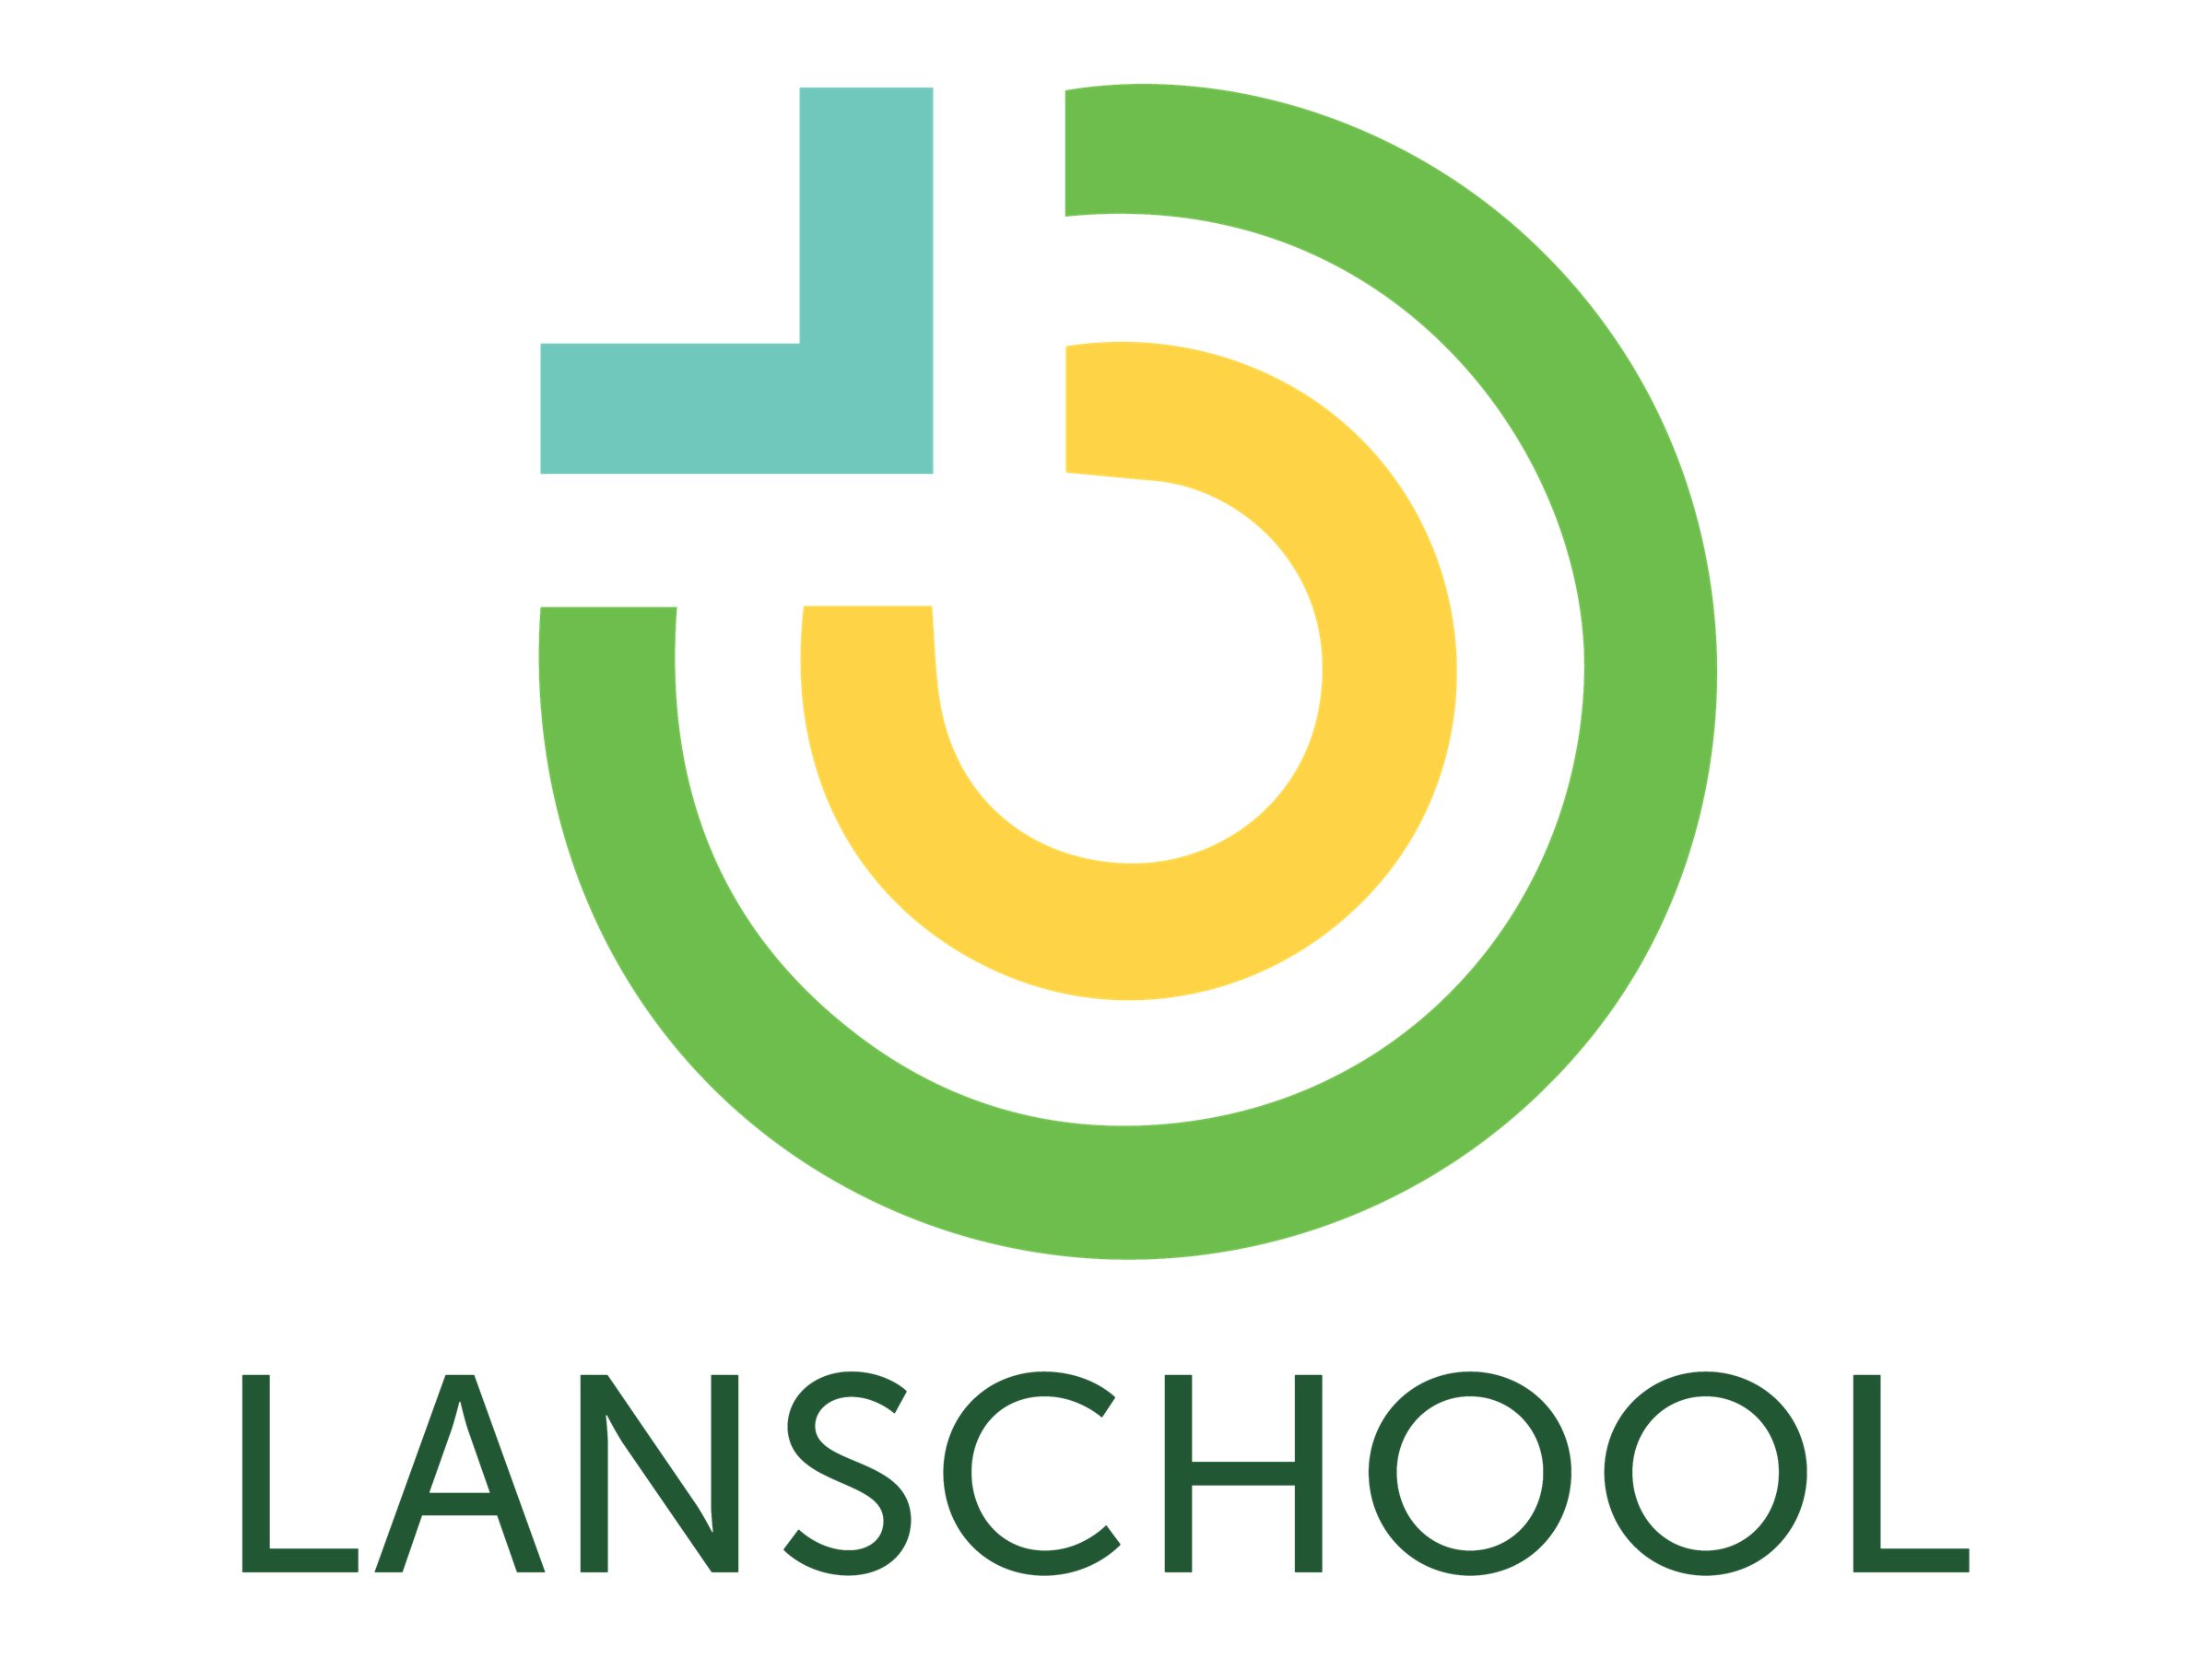 LanSchool - Abonnement-Lizenz (3 Jahre) + Technical Support - 1 Gerät - Volumen - 3500 - 5999 Lizenzen